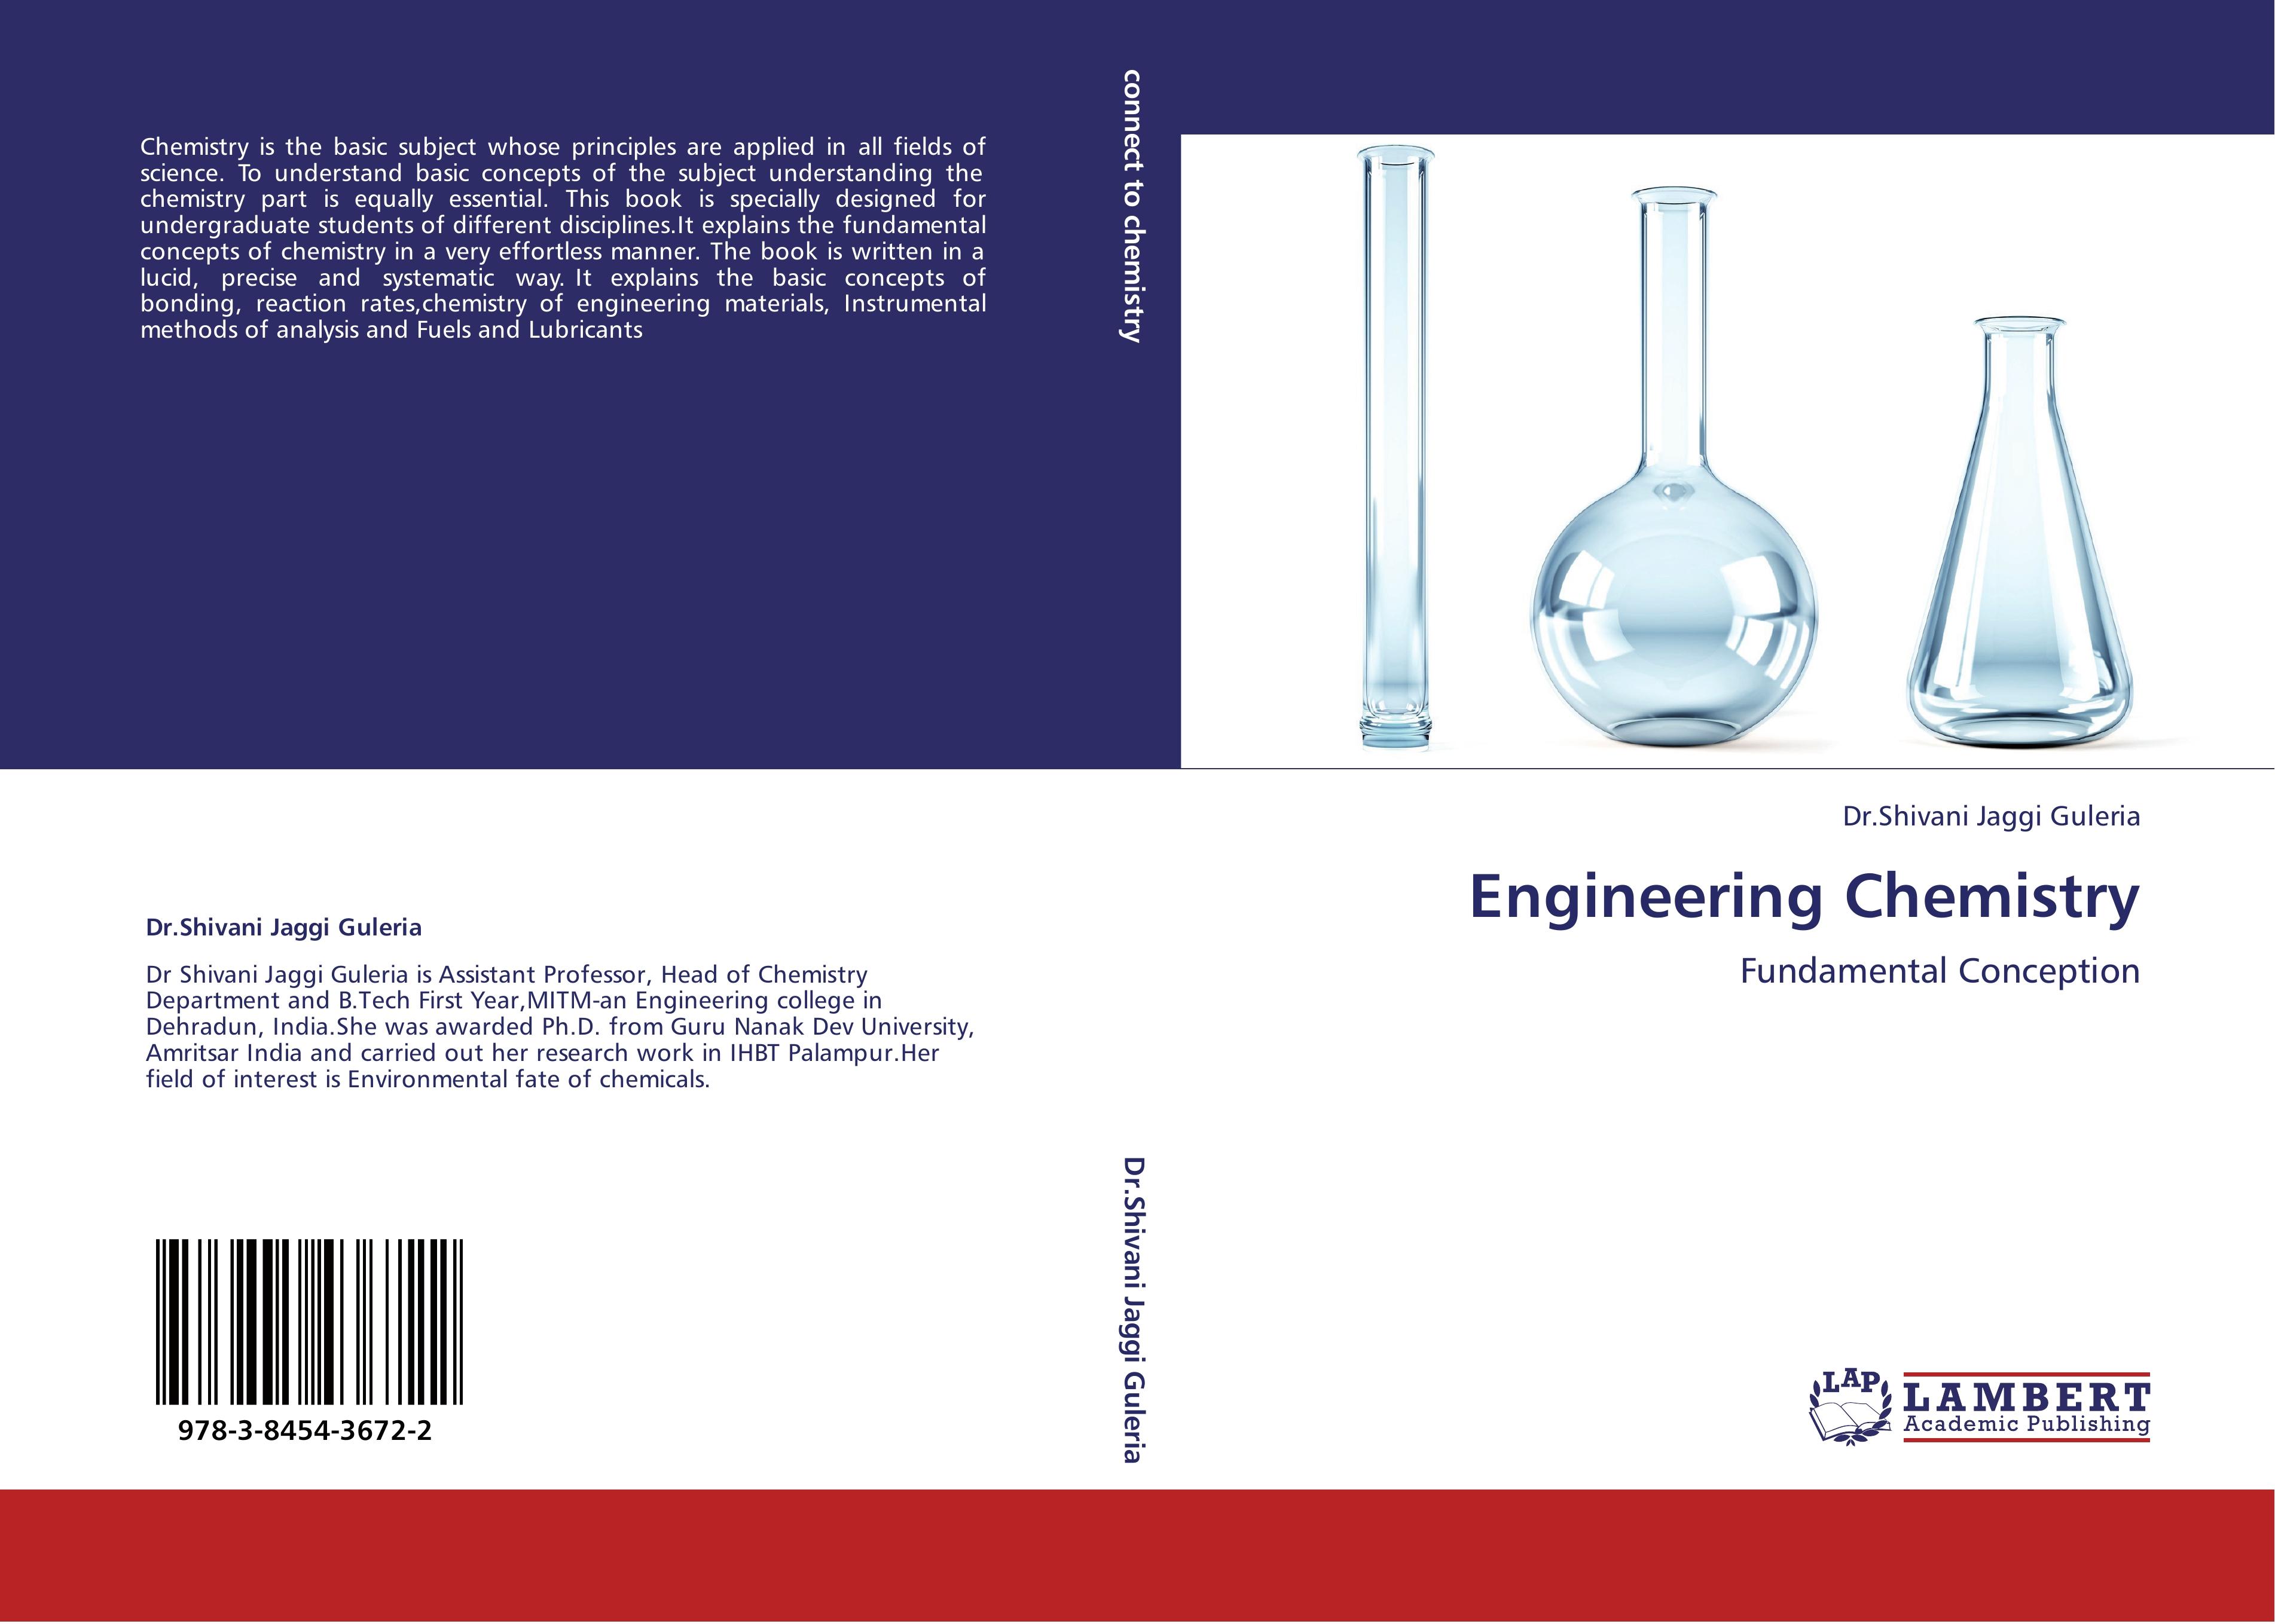 Engineering Chemistry - Dr.Shivani Jaggi Guleria